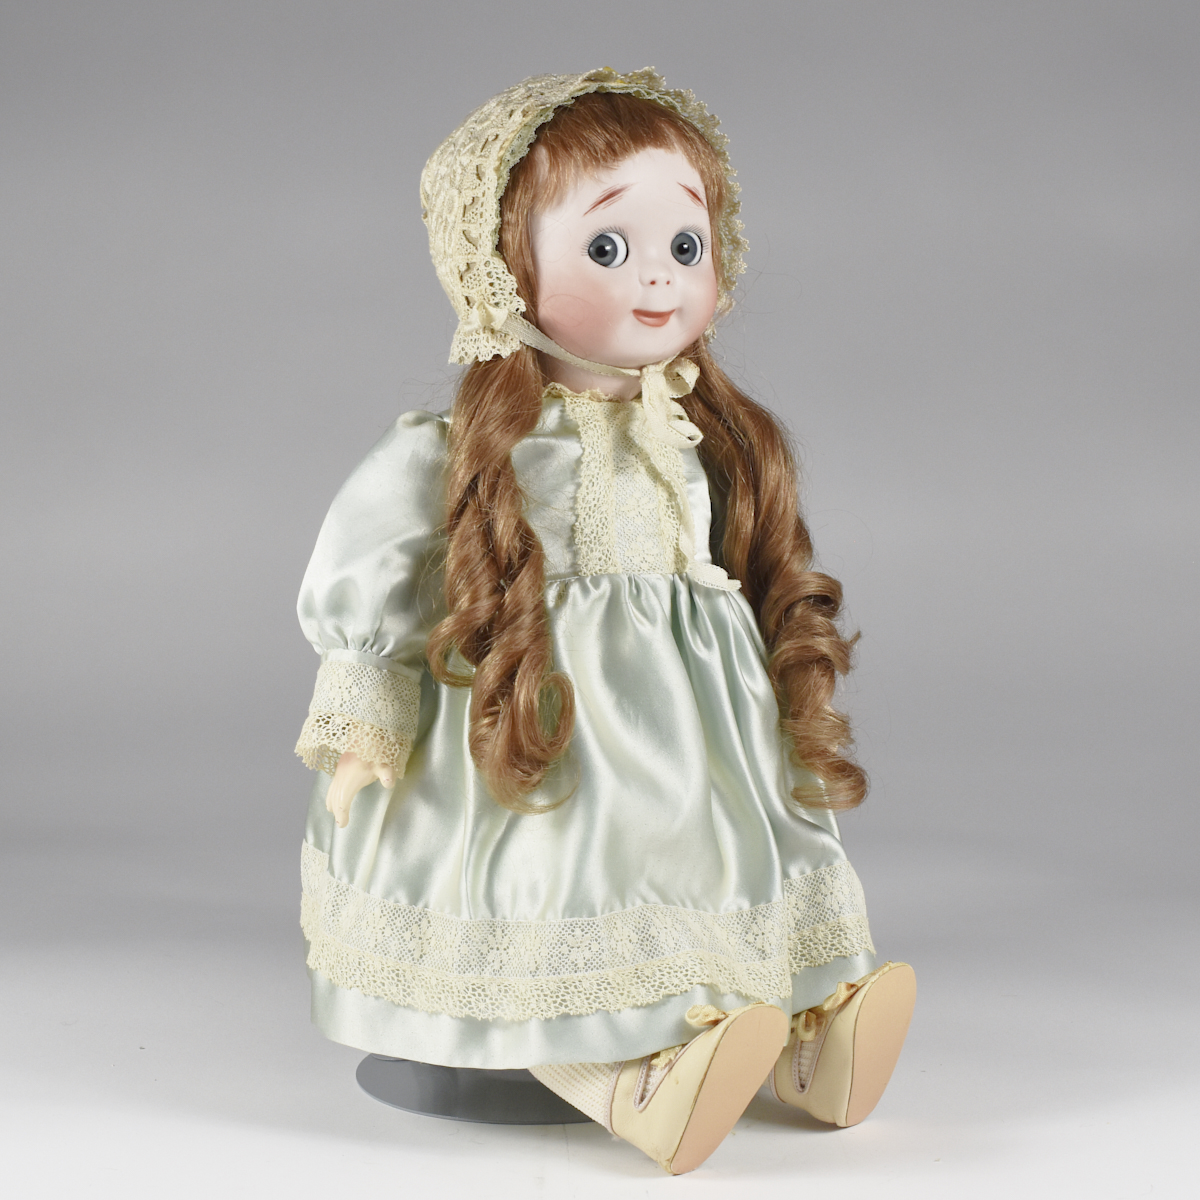 JDK Kestner 221 Porcelain Doll for Butler Brothers - Image 3 of 7